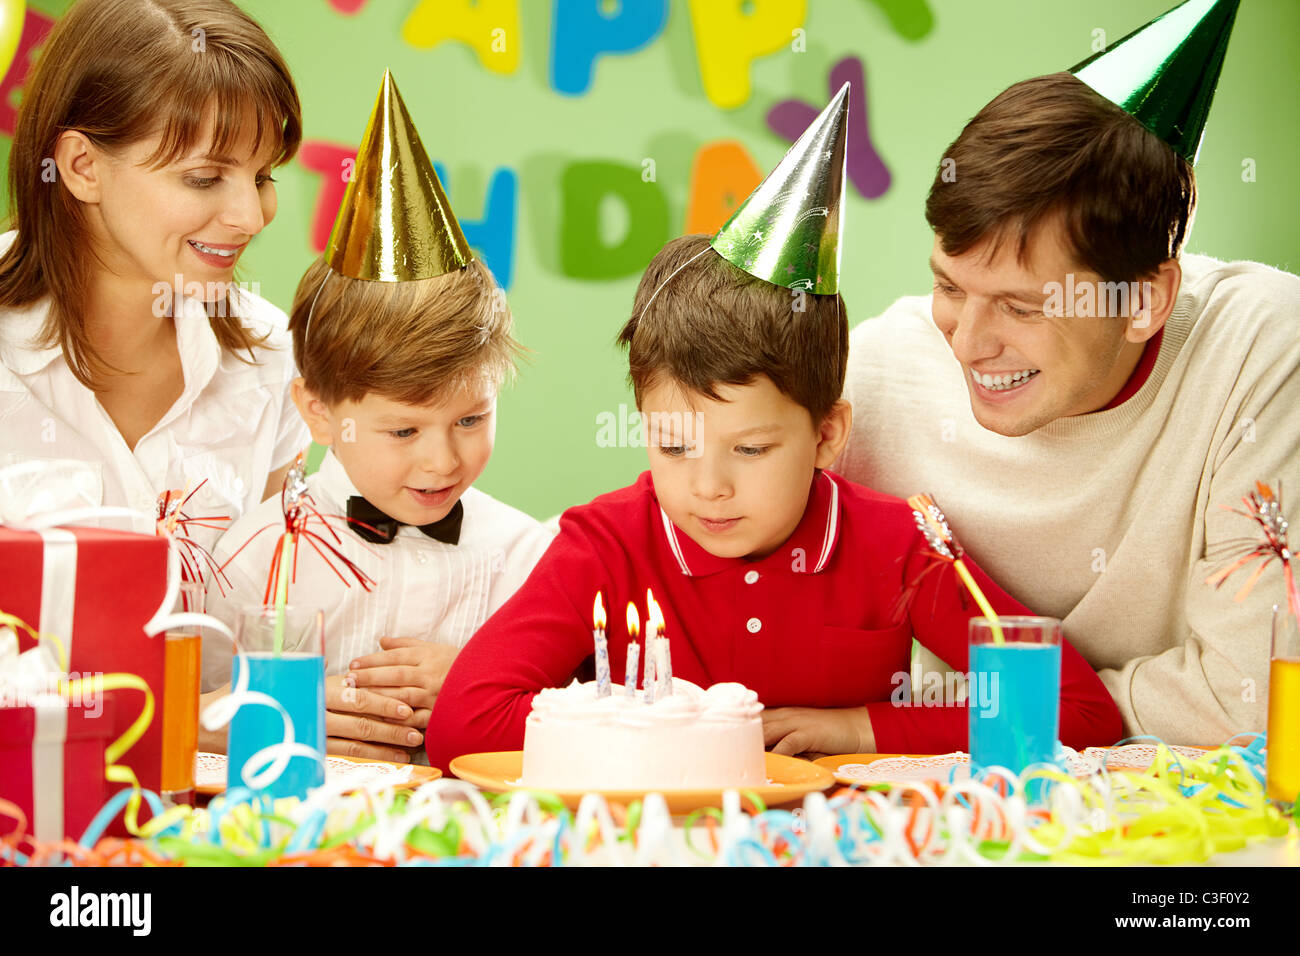 День рождения мальчика екатеринбург. Празднование дня рождения. С днём рождения ребёнку. Семейный праздник день рождения. Празднование дня рождения ребенка.